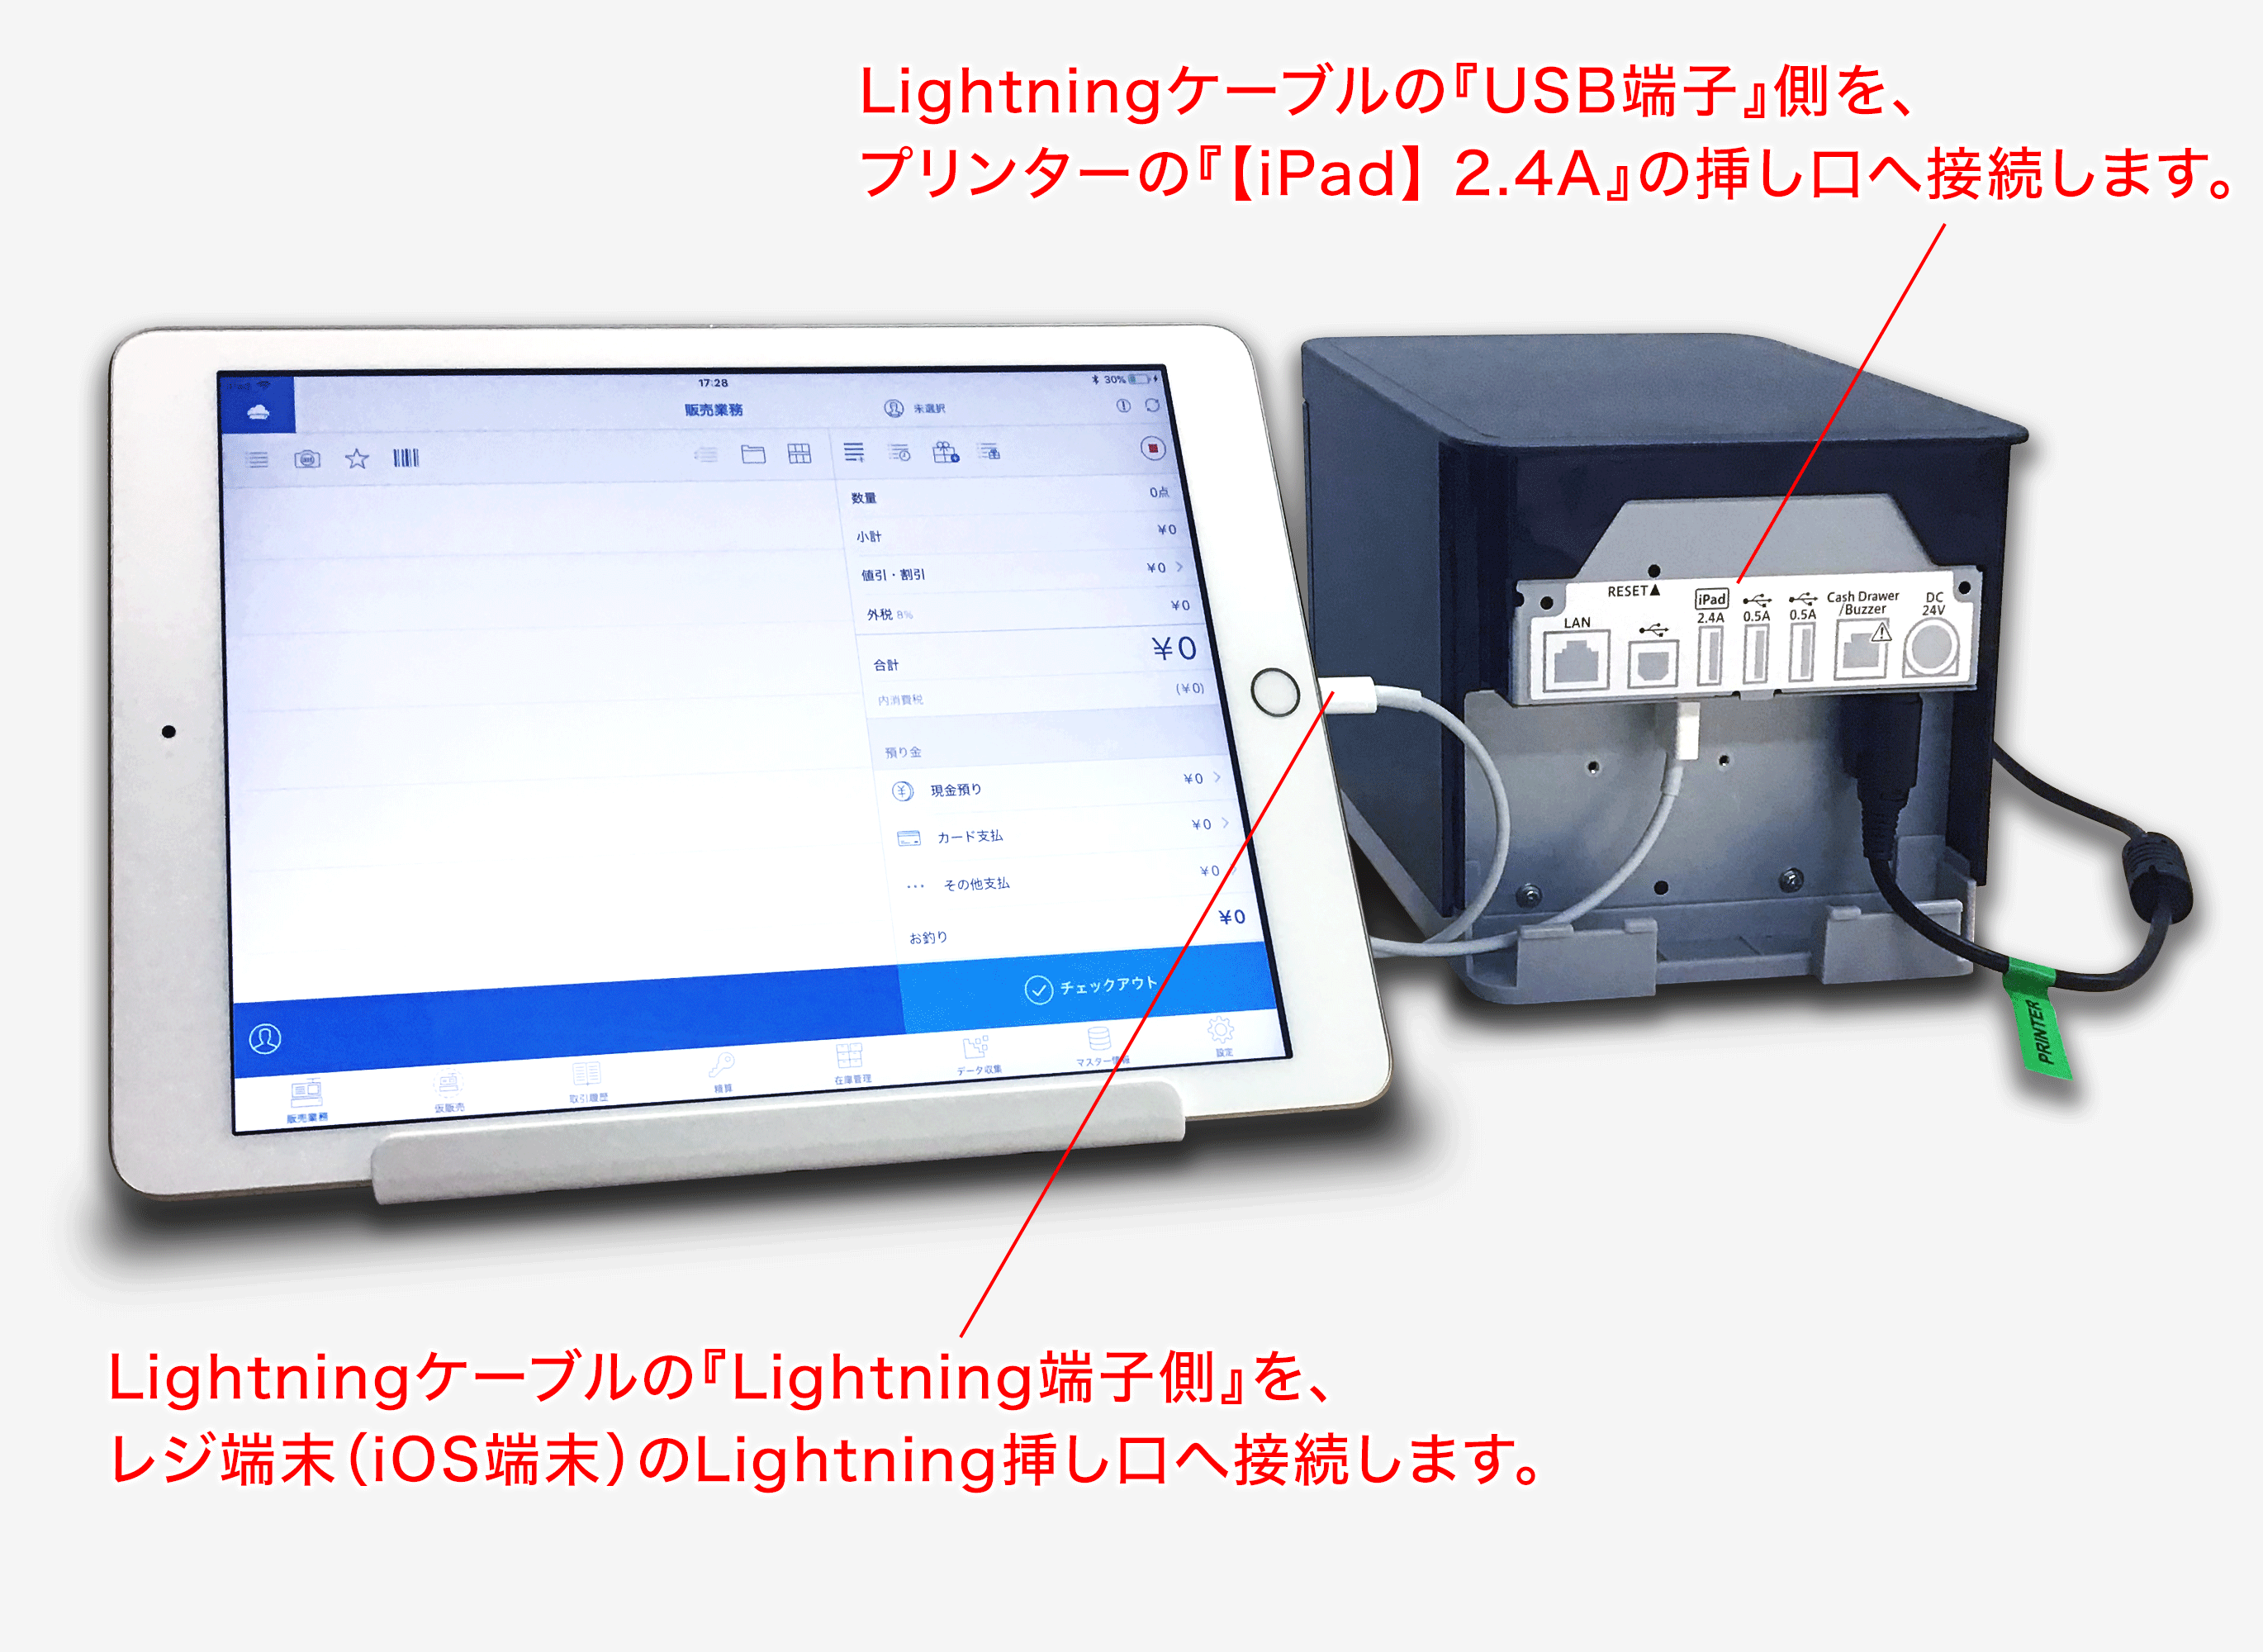 【未使用品】スターマイクロニクス TSP143Ⅲラン レシートプリンター USB